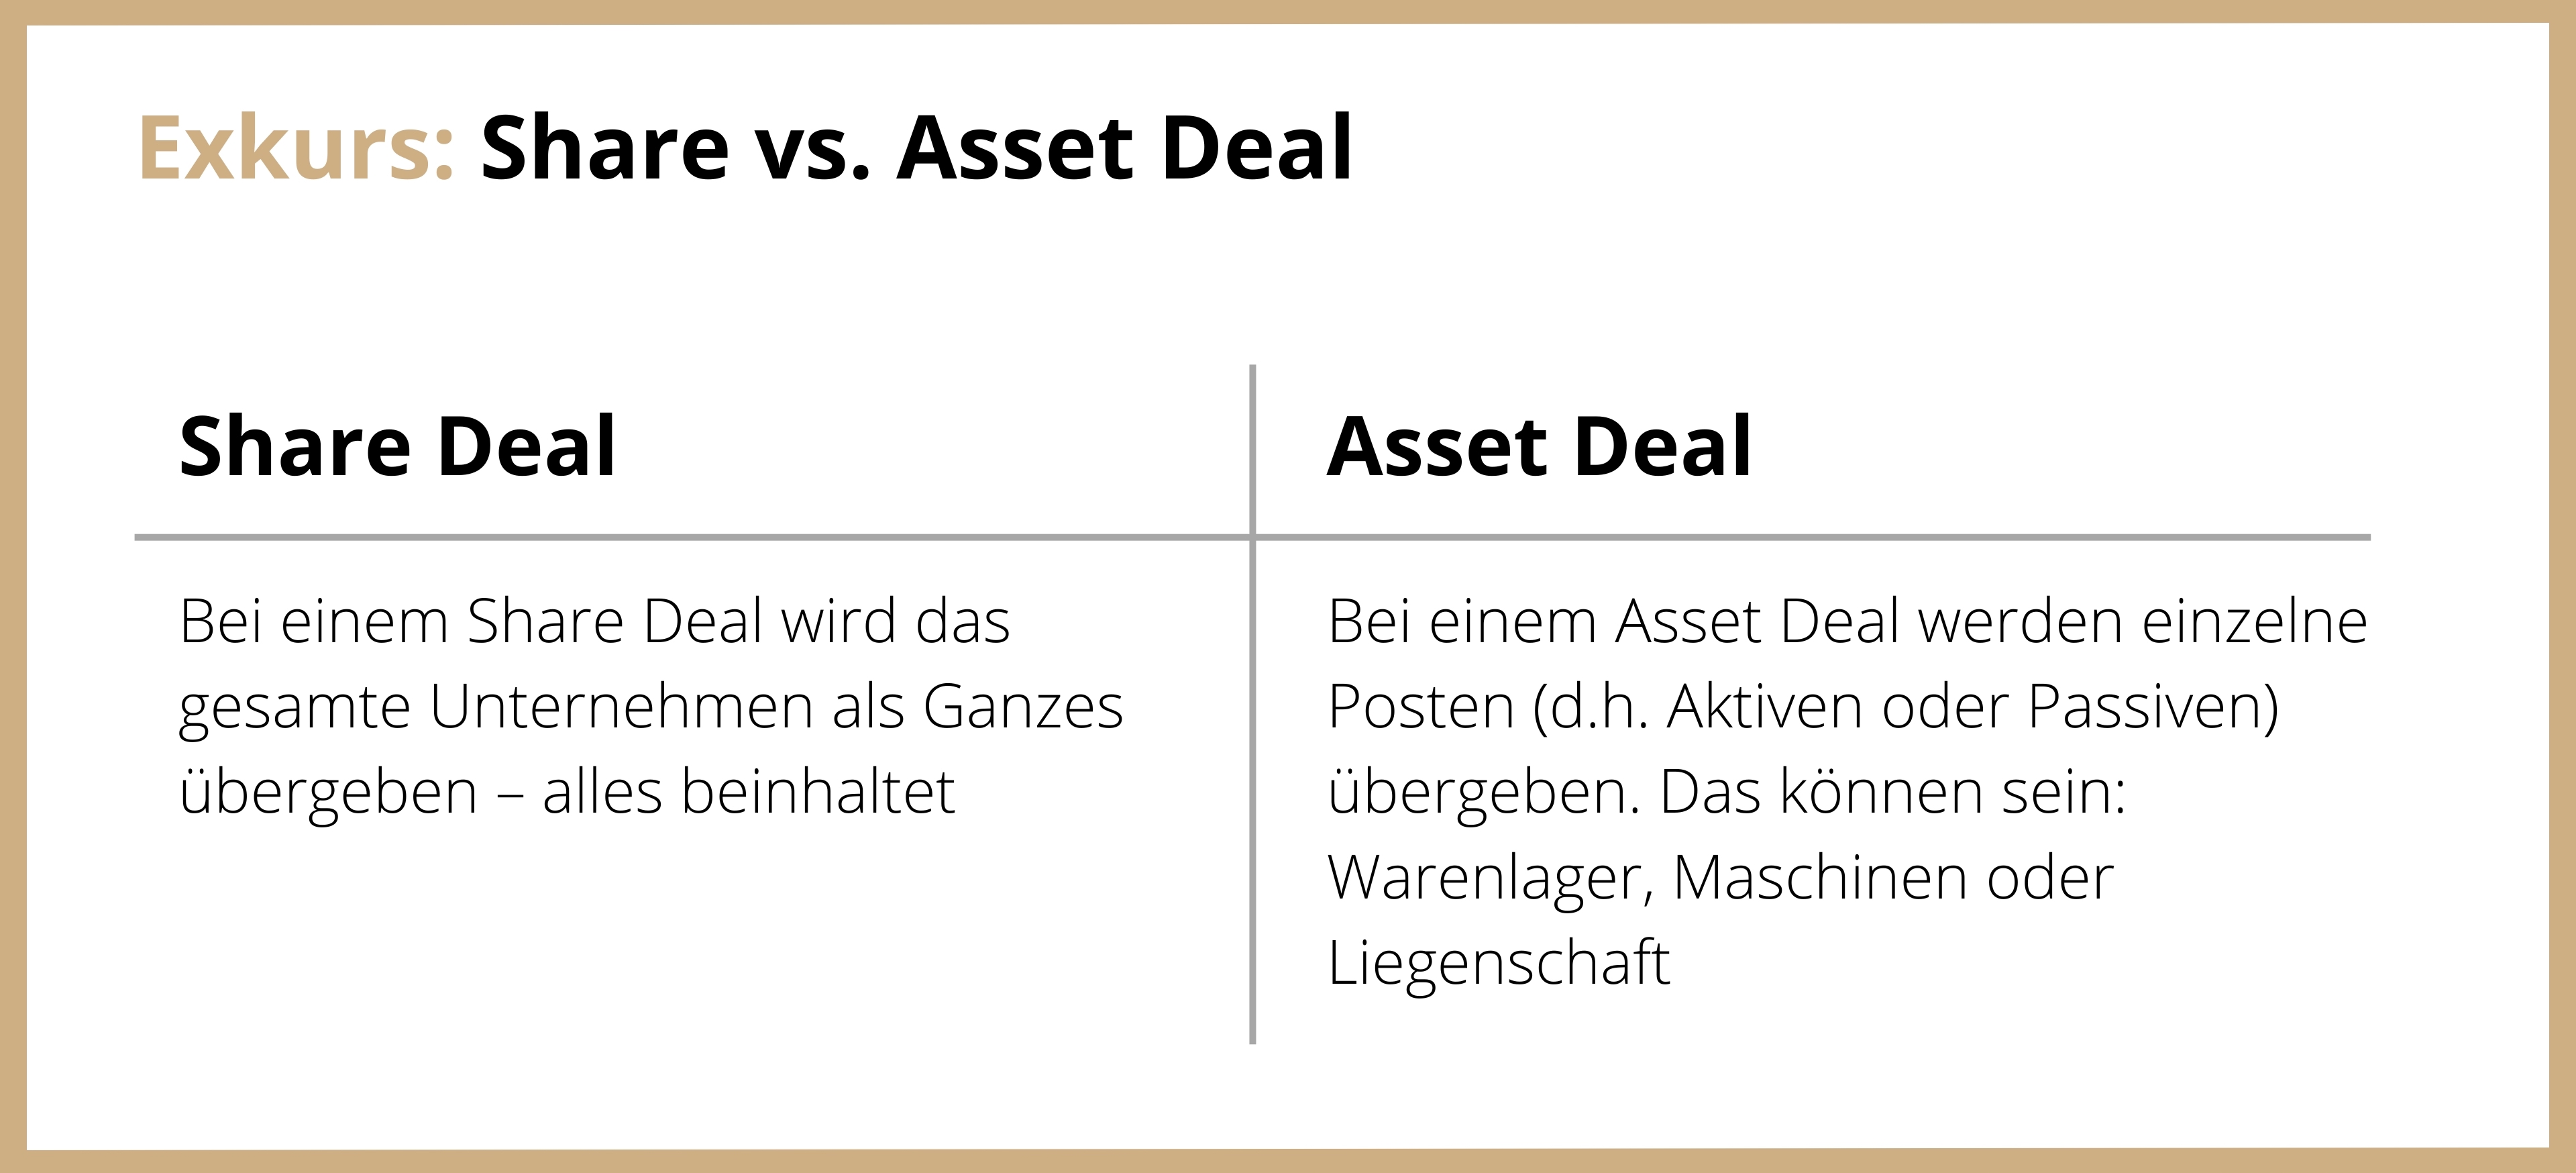 Schematische Gegenüberstellung von Share Deal und Asset Deal